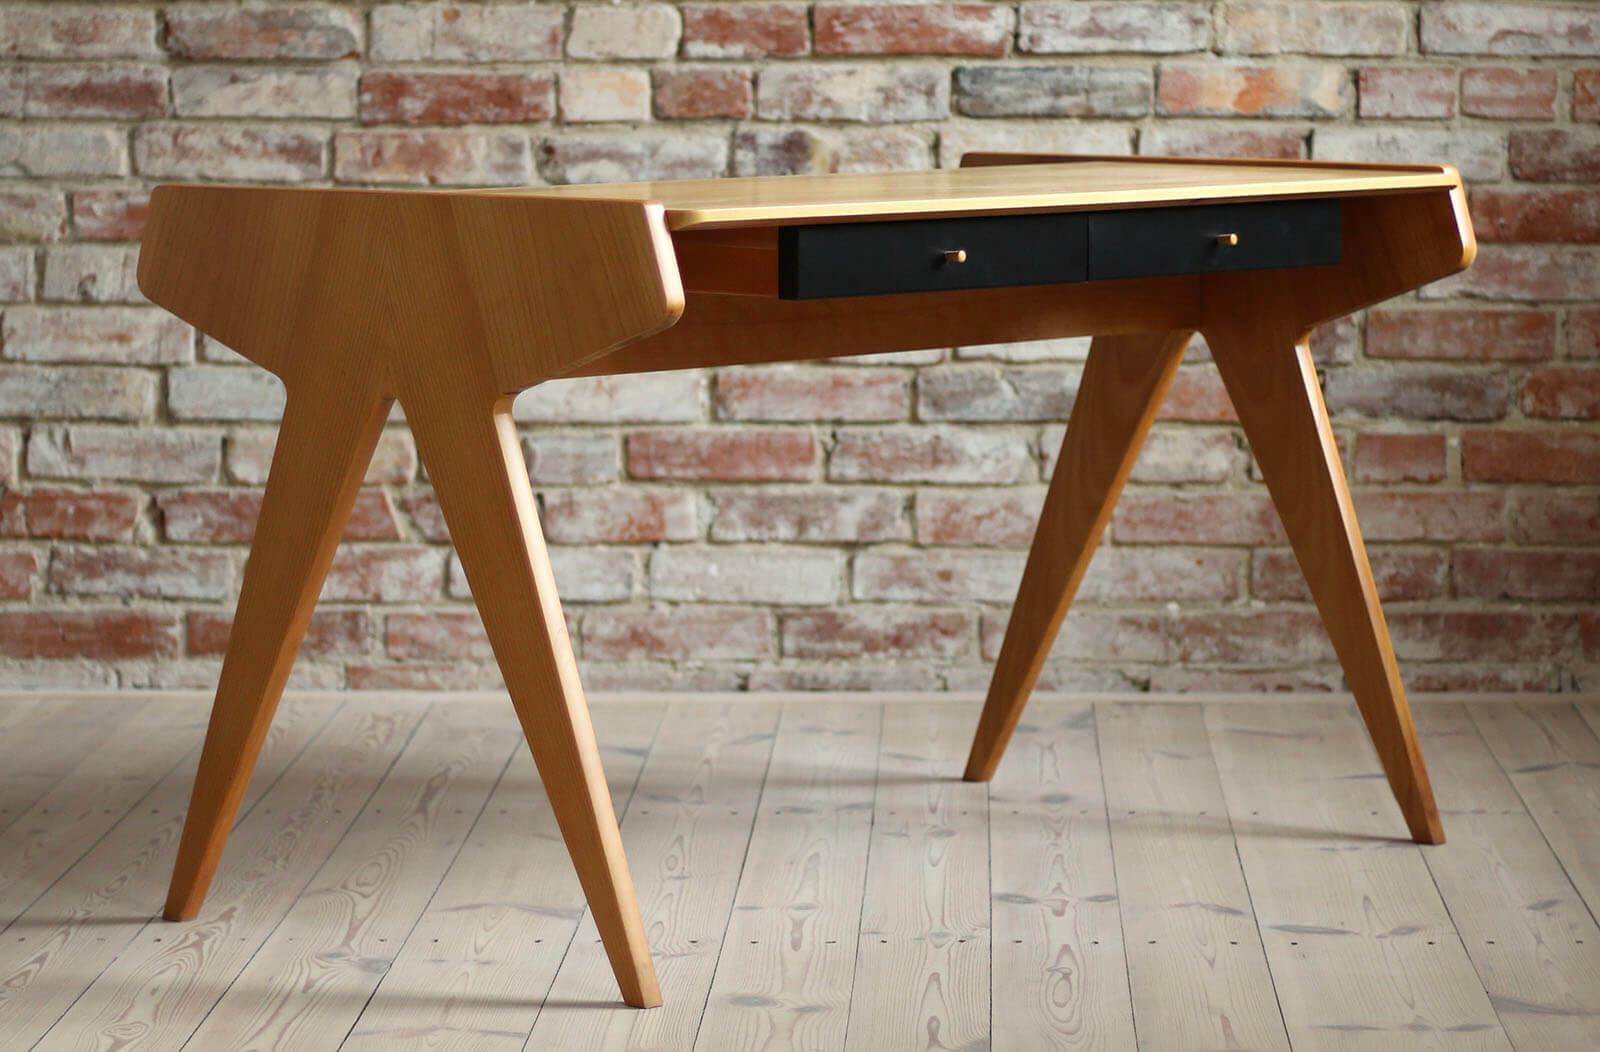 Dieser Schreibtisch wurde in den 1950er Jahren von Helmut Magg entworfen und von der Neuen Gemeinschaft für Wohnkultur, WK Möbel, hergestellt. In einer der Schubladen befindet sich noch das Original-Label. Das Design ist einfach, aber sehr elegant.